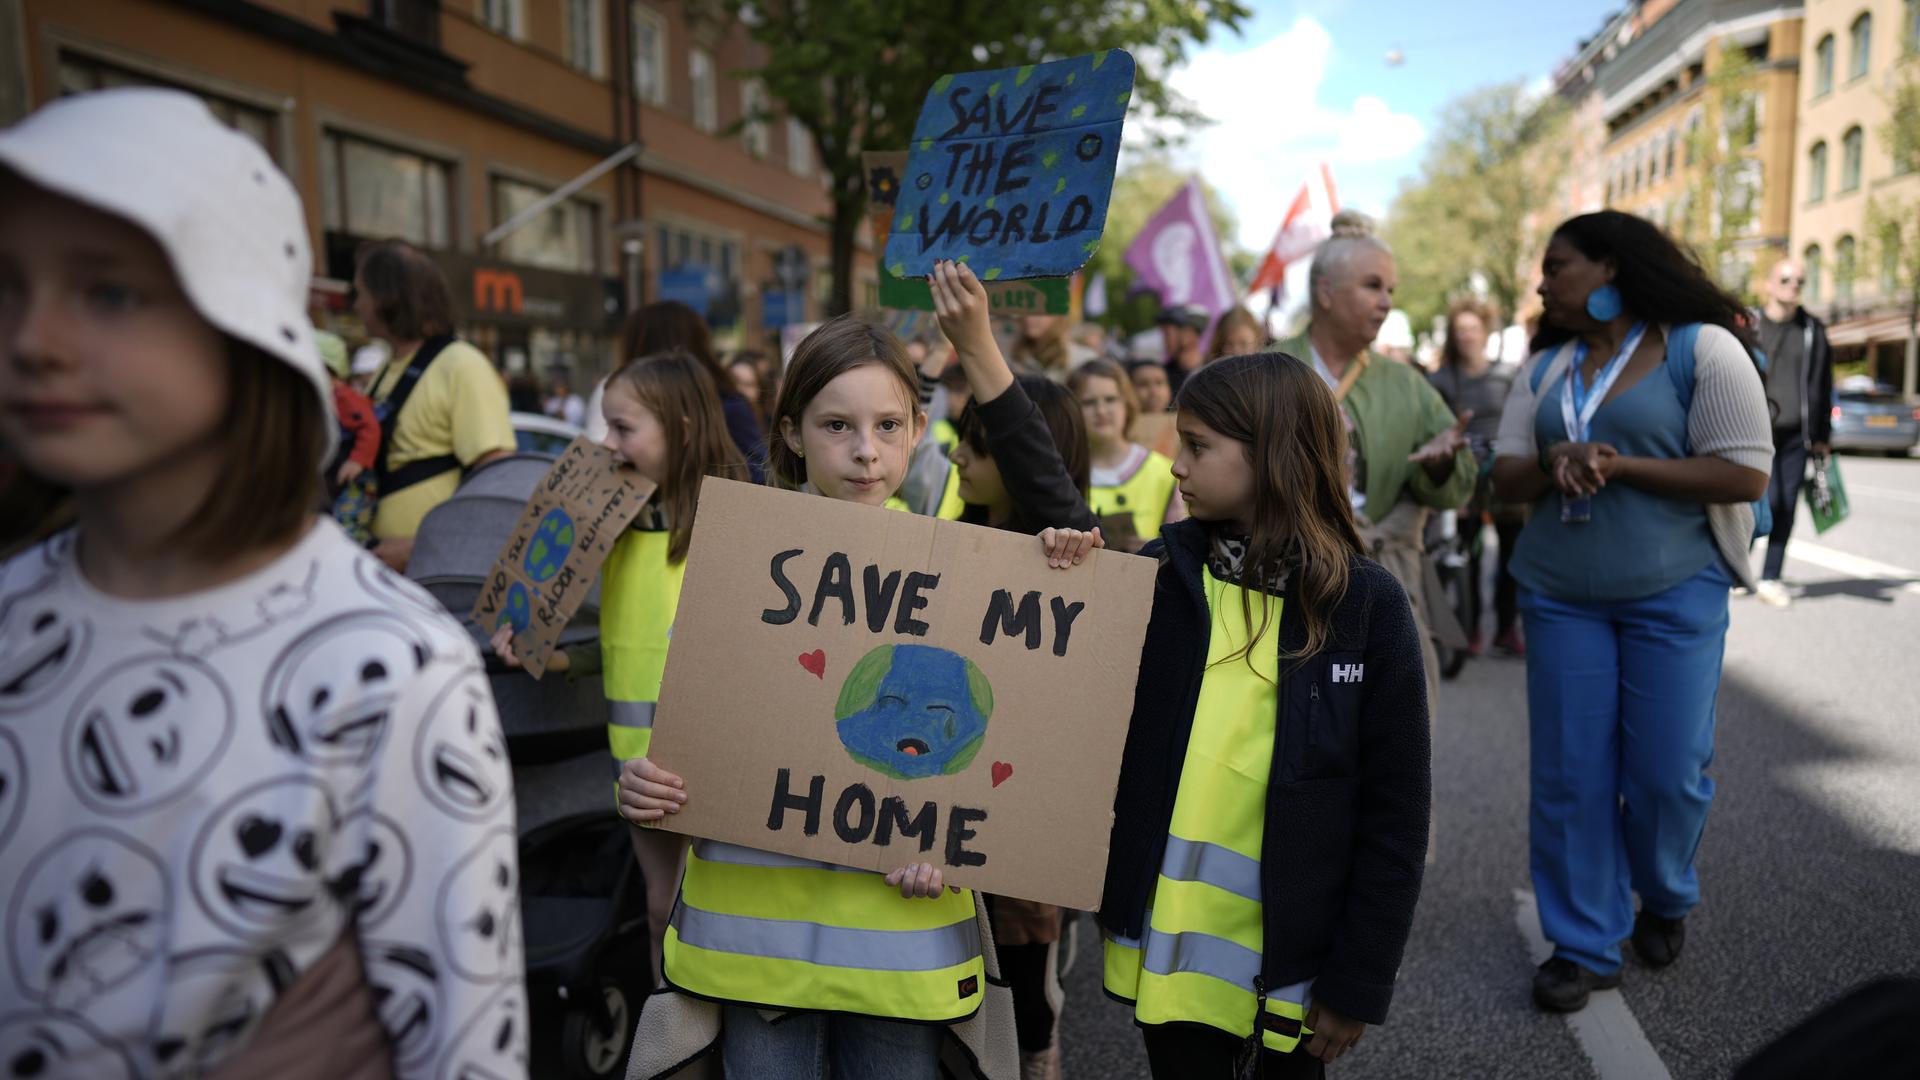 "Save our home" - Kinder auf Klimademo Anfang Juni 2022 in Stockholm